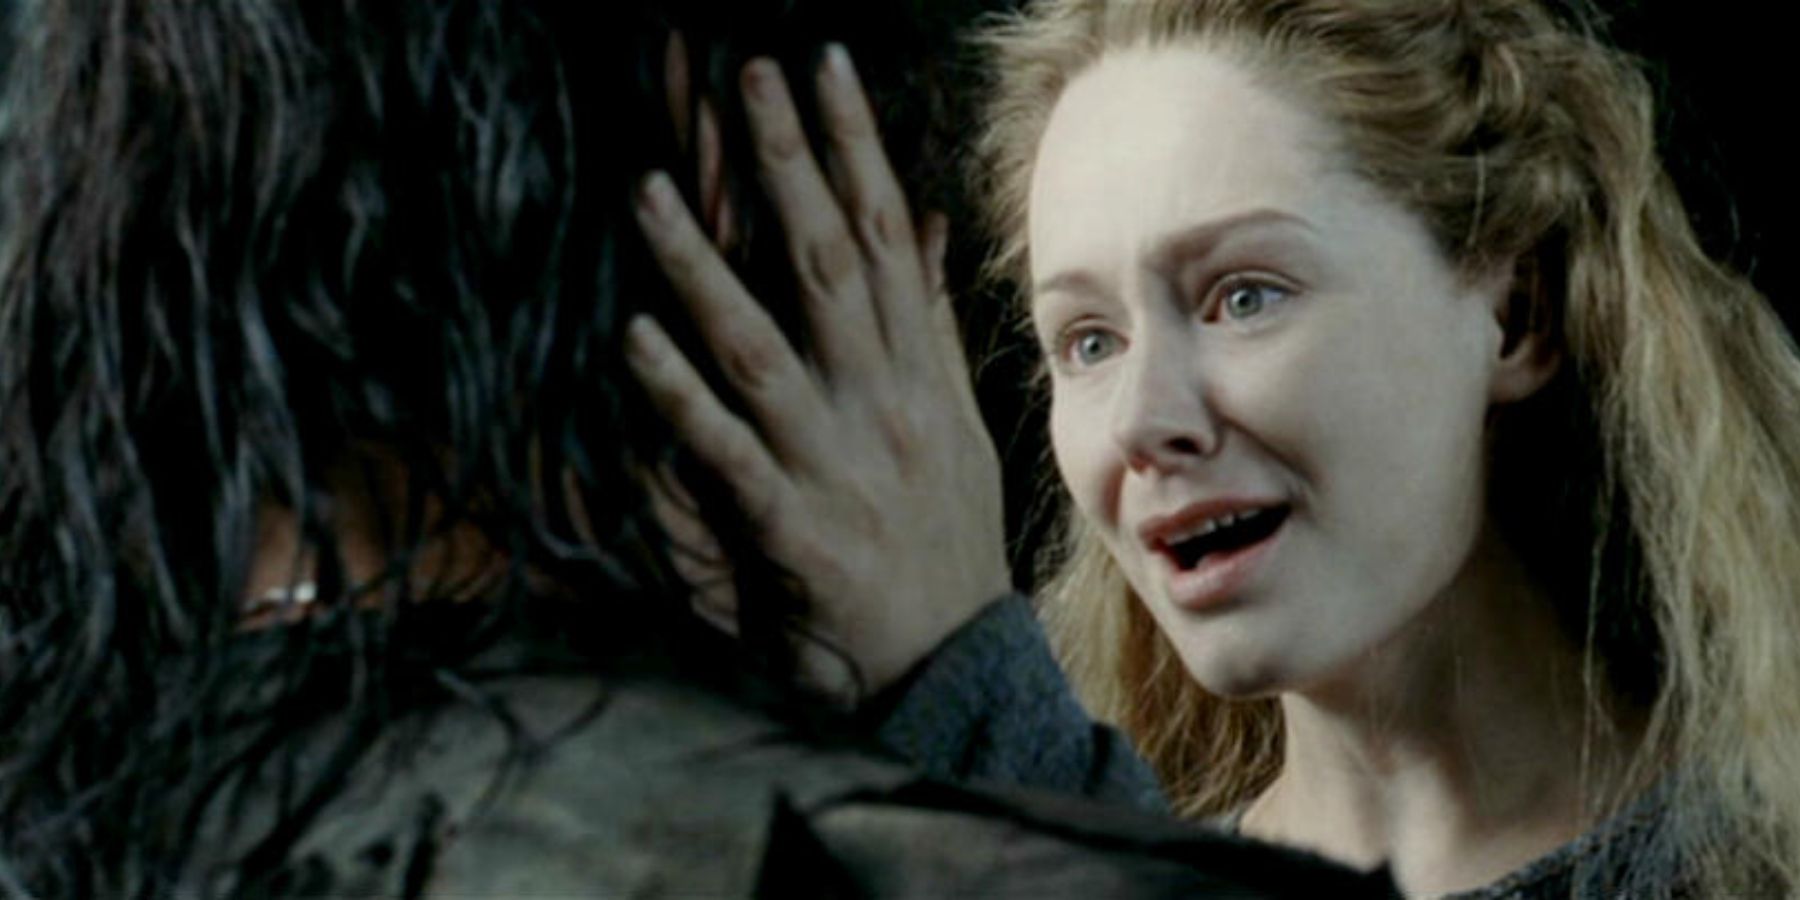 Eowyn holds Aragorn